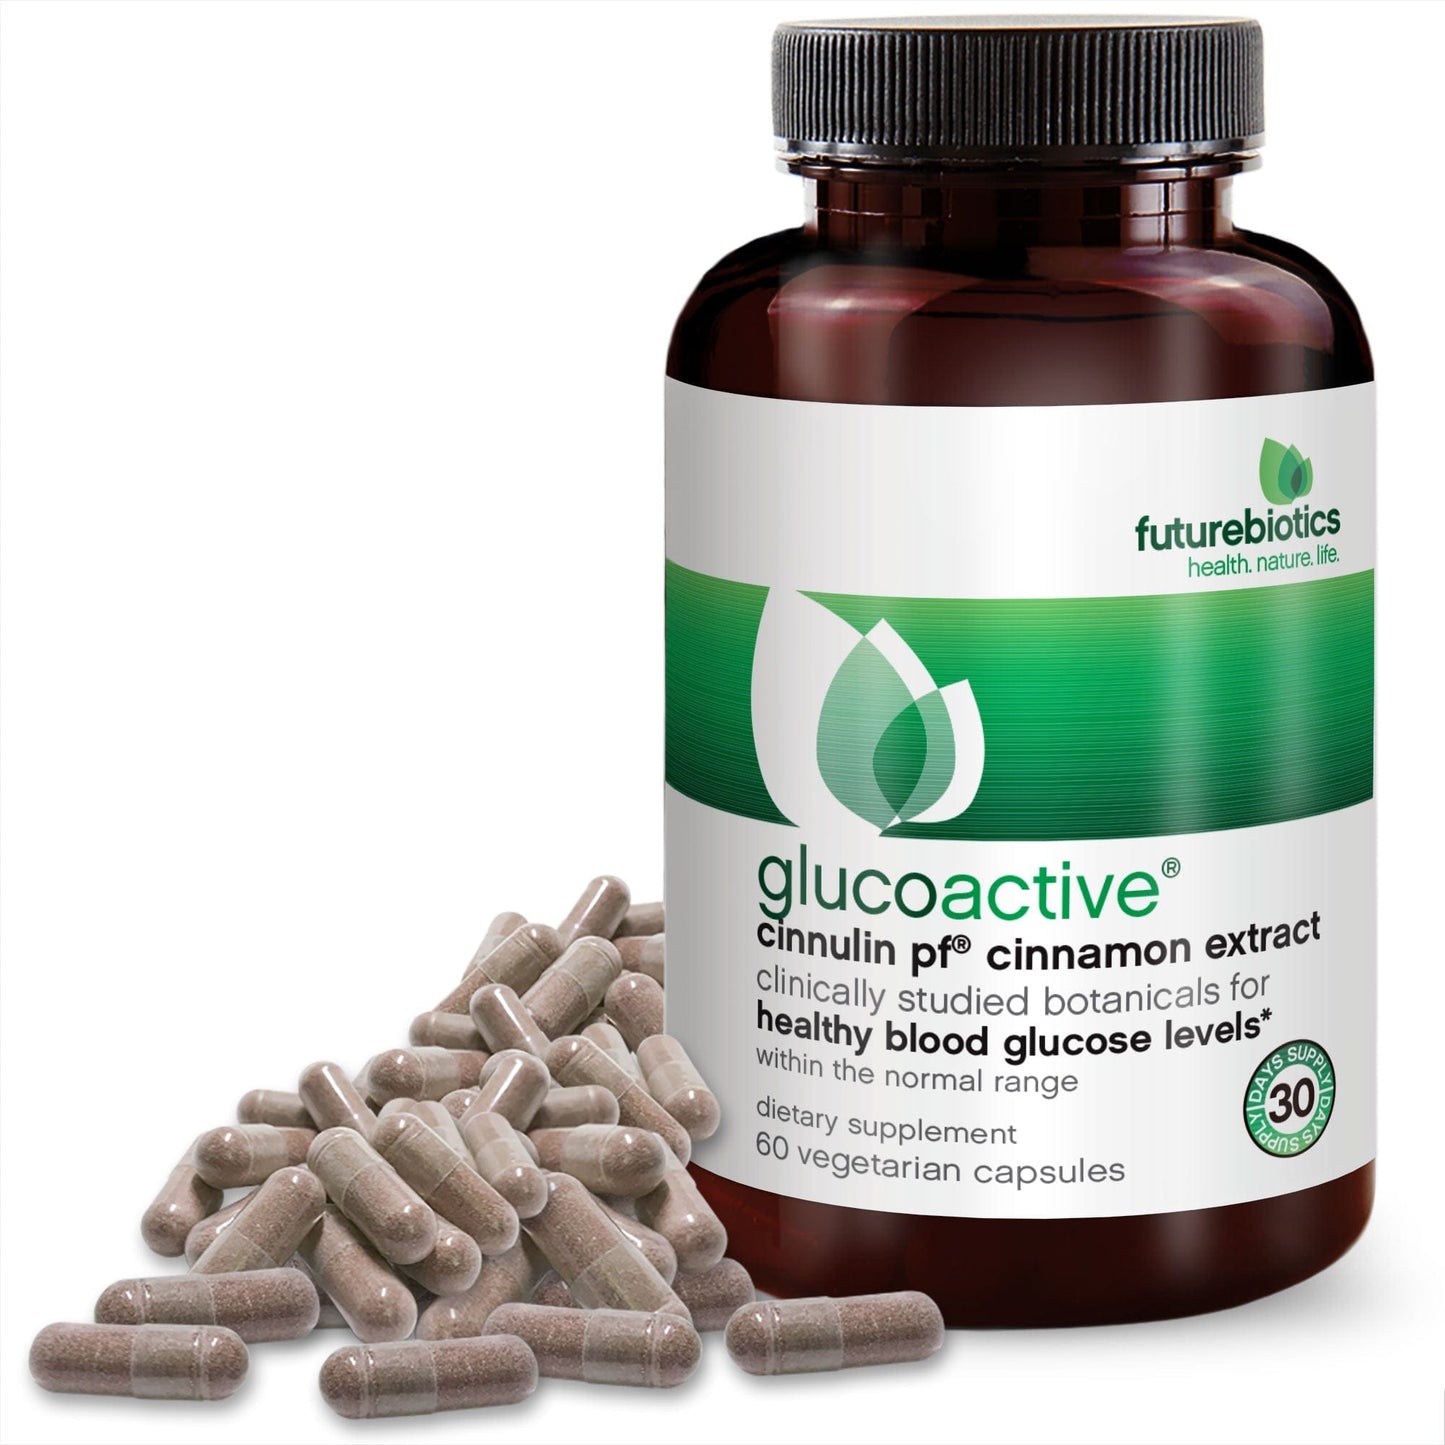 Futurebiotics GlucoActive Cinnamon Extract, 60 Capsules